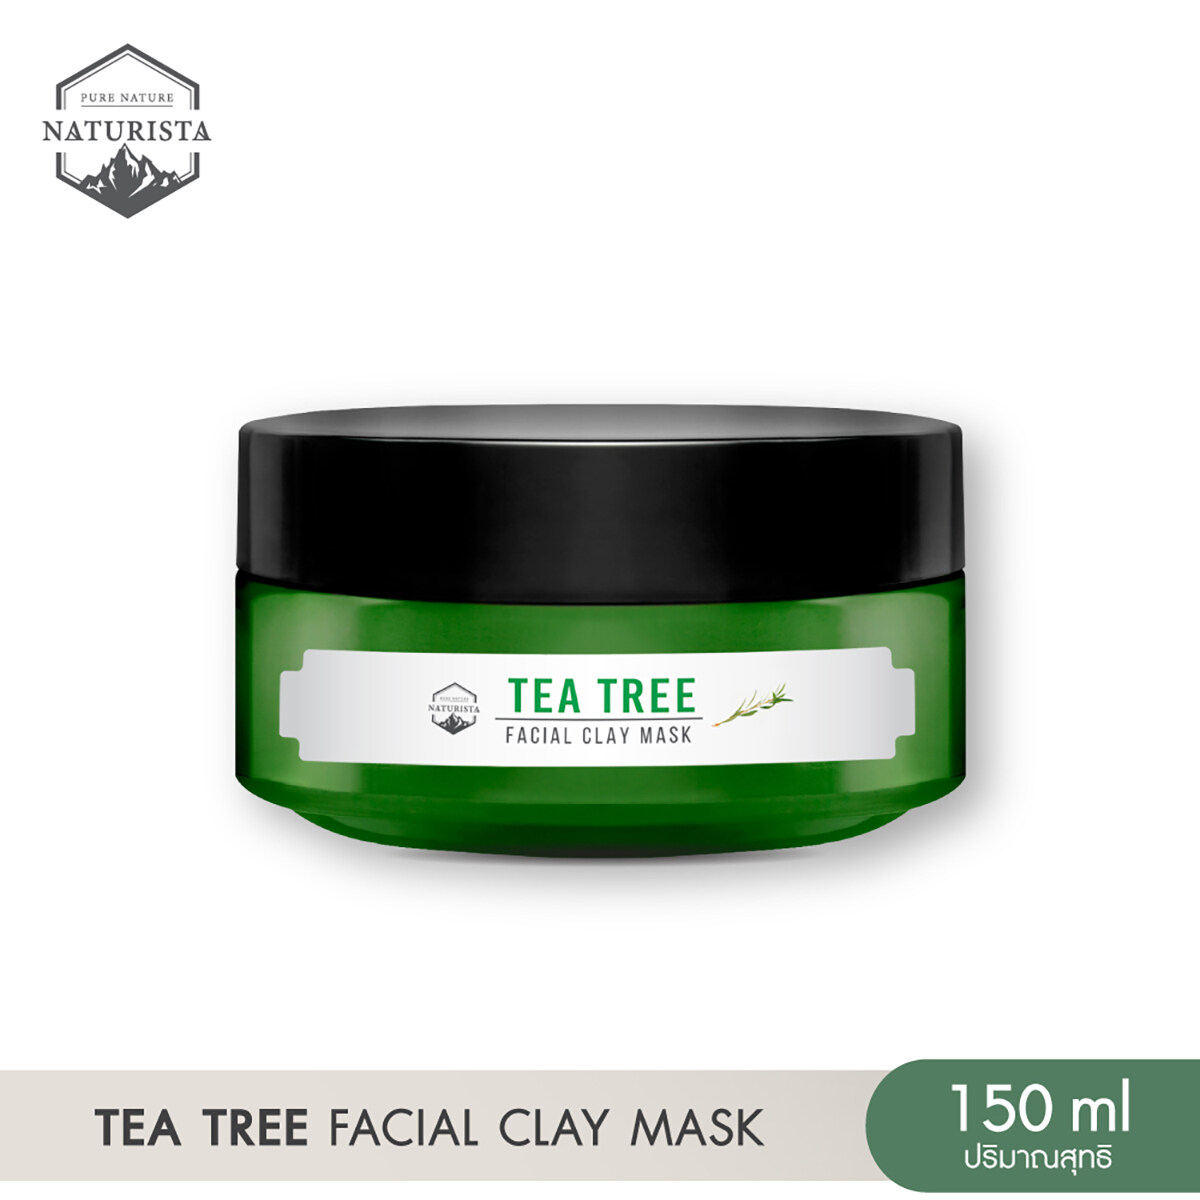 ใหม่! มาส์กโคลนทีทรี เพื่อผิวหน้าที่เนียนนุ่มขึ้น Naturista Tea Tree Facial Clay Mask 150ml